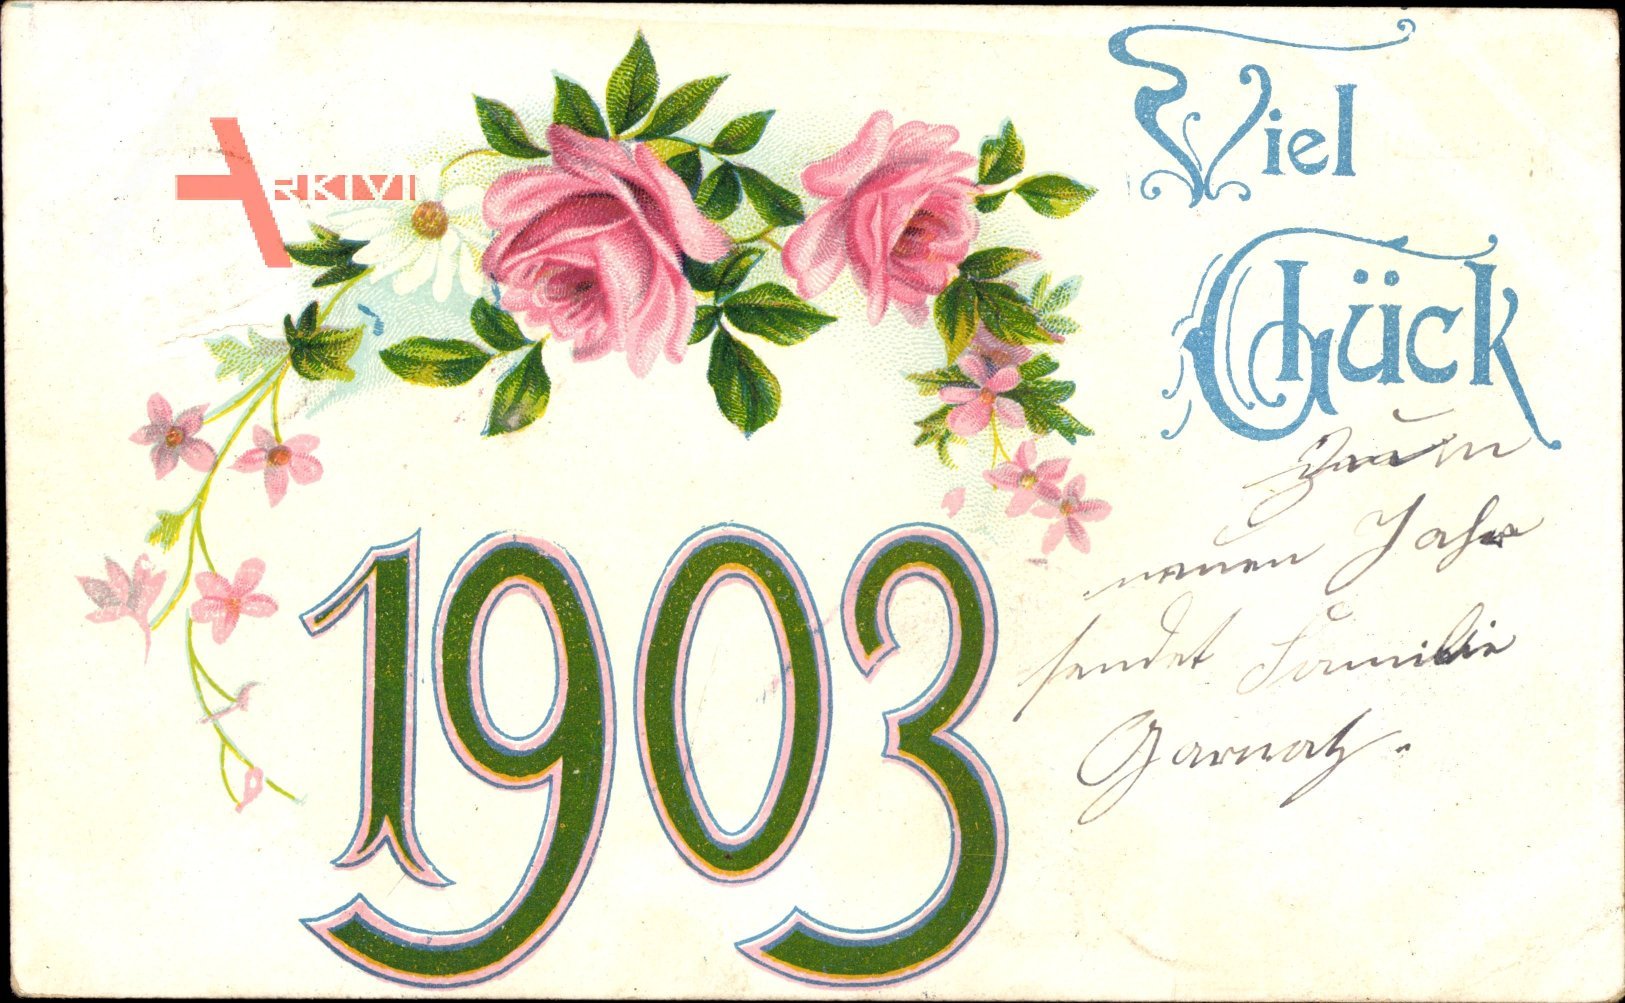 Glückwunsch Neujahr, Jahreszahl 1903, Blumen, Kitsch